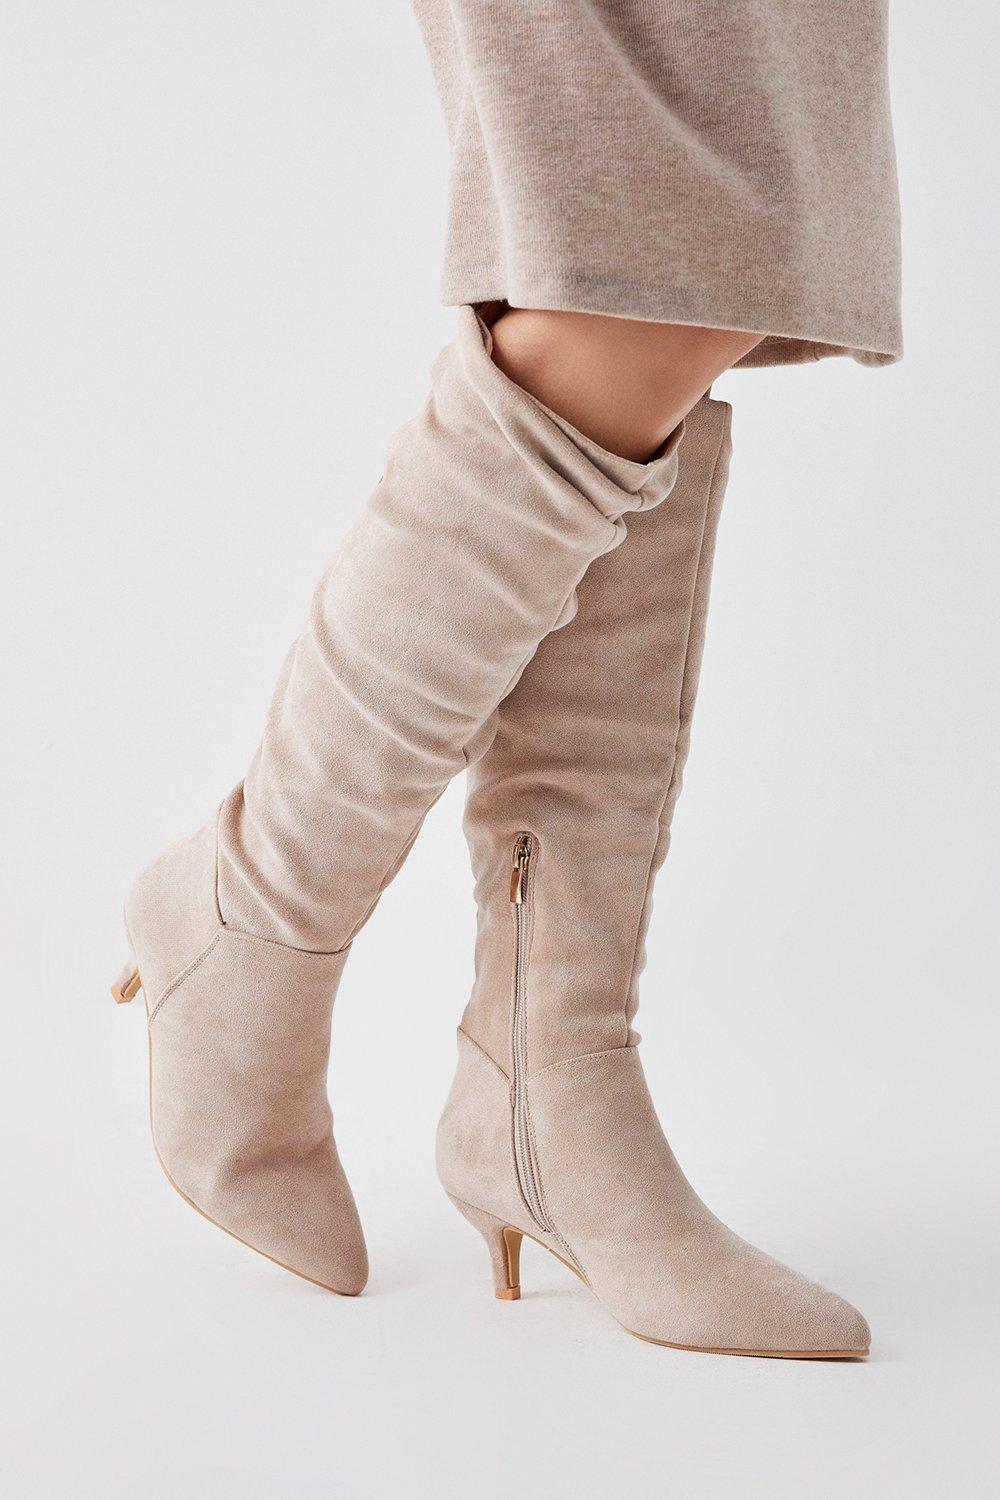 Women’s Khloe Knee High Low Heel Ruched Boots - beige - 8